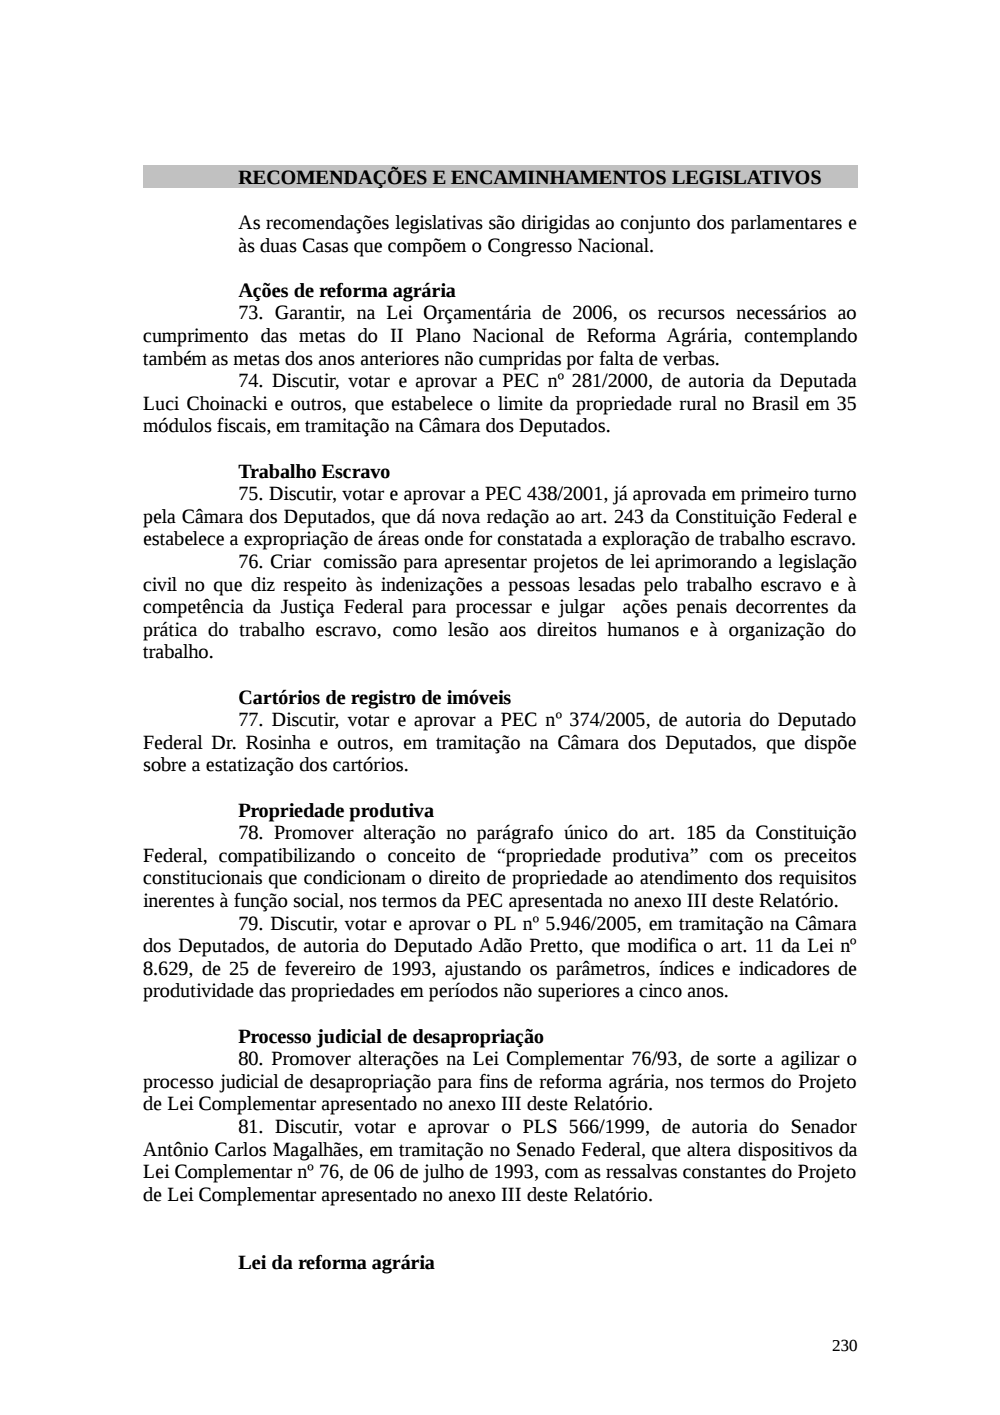 Page 230 from Relatório final da comissão